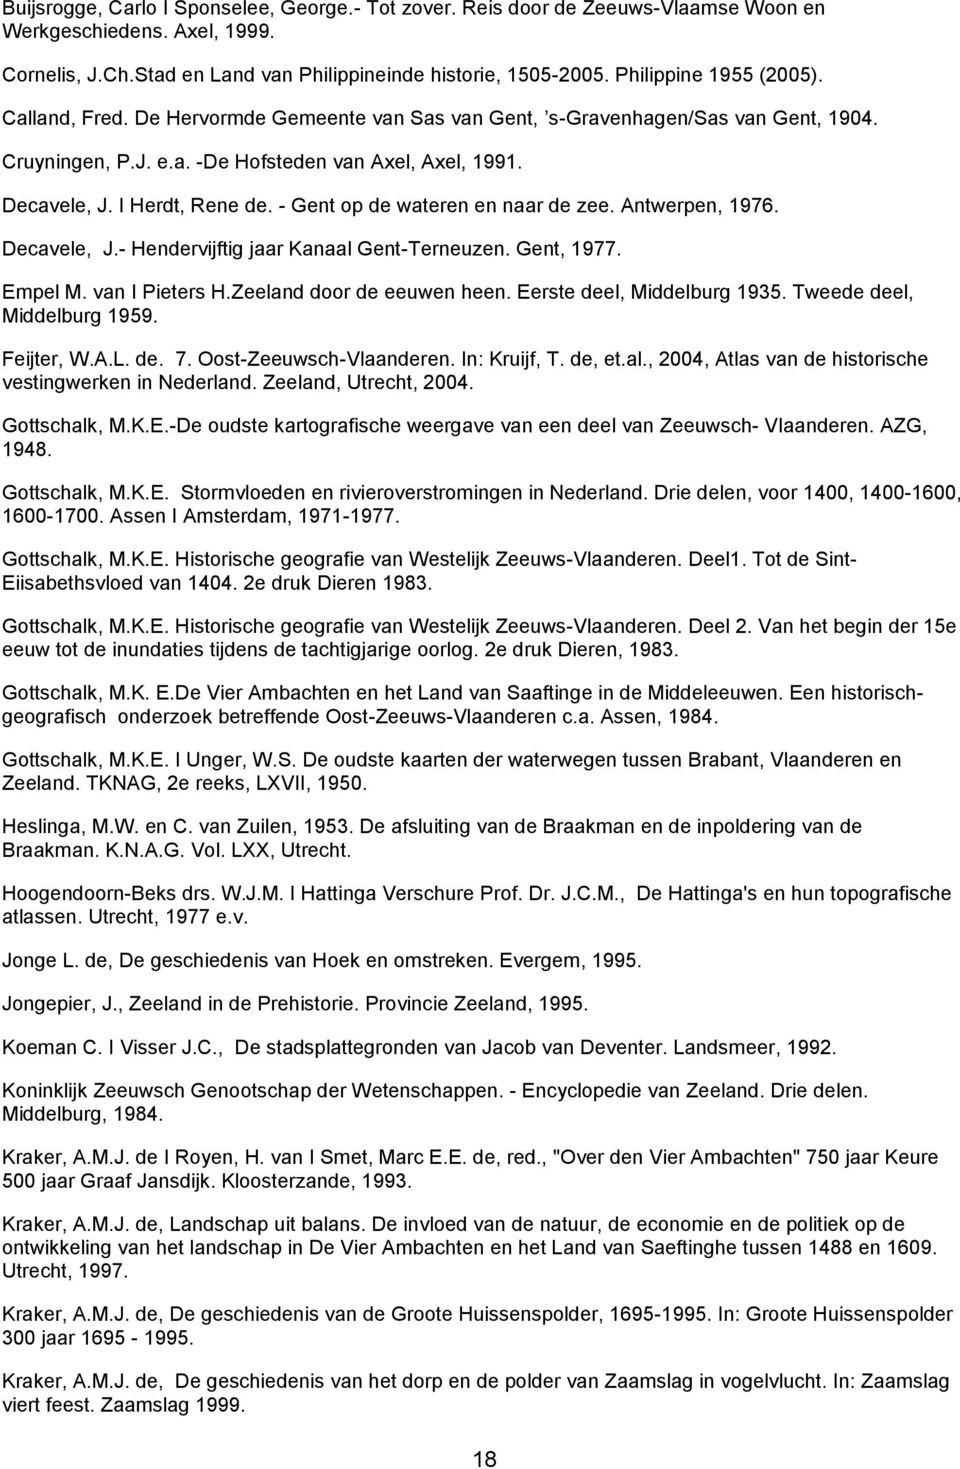 I Herdt, Rene de. - Gent op de wateren en naar de zee. Antwerpen, 1976. Decavele, J.- Hendervijftig jaar Kanaal Gent-Terneuzen. Gent, 1977. Empel M. van I Pieters H.Zeeland door de eeuwen heen.